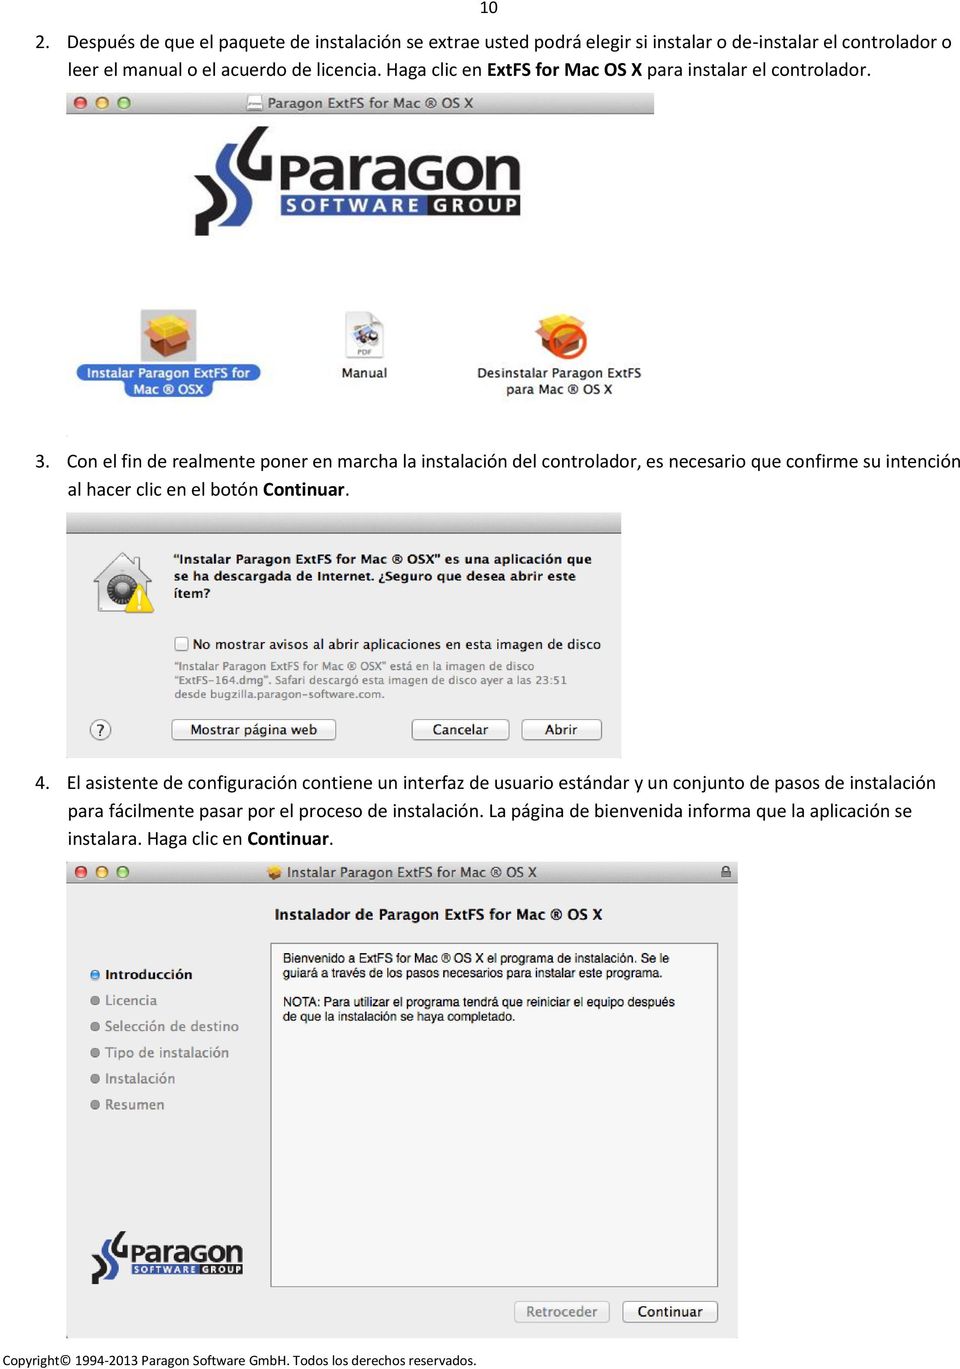 Download file Vuelveteloca- Pantera (2015).zip (119,21 Mb) In free mode | Turbobit.net